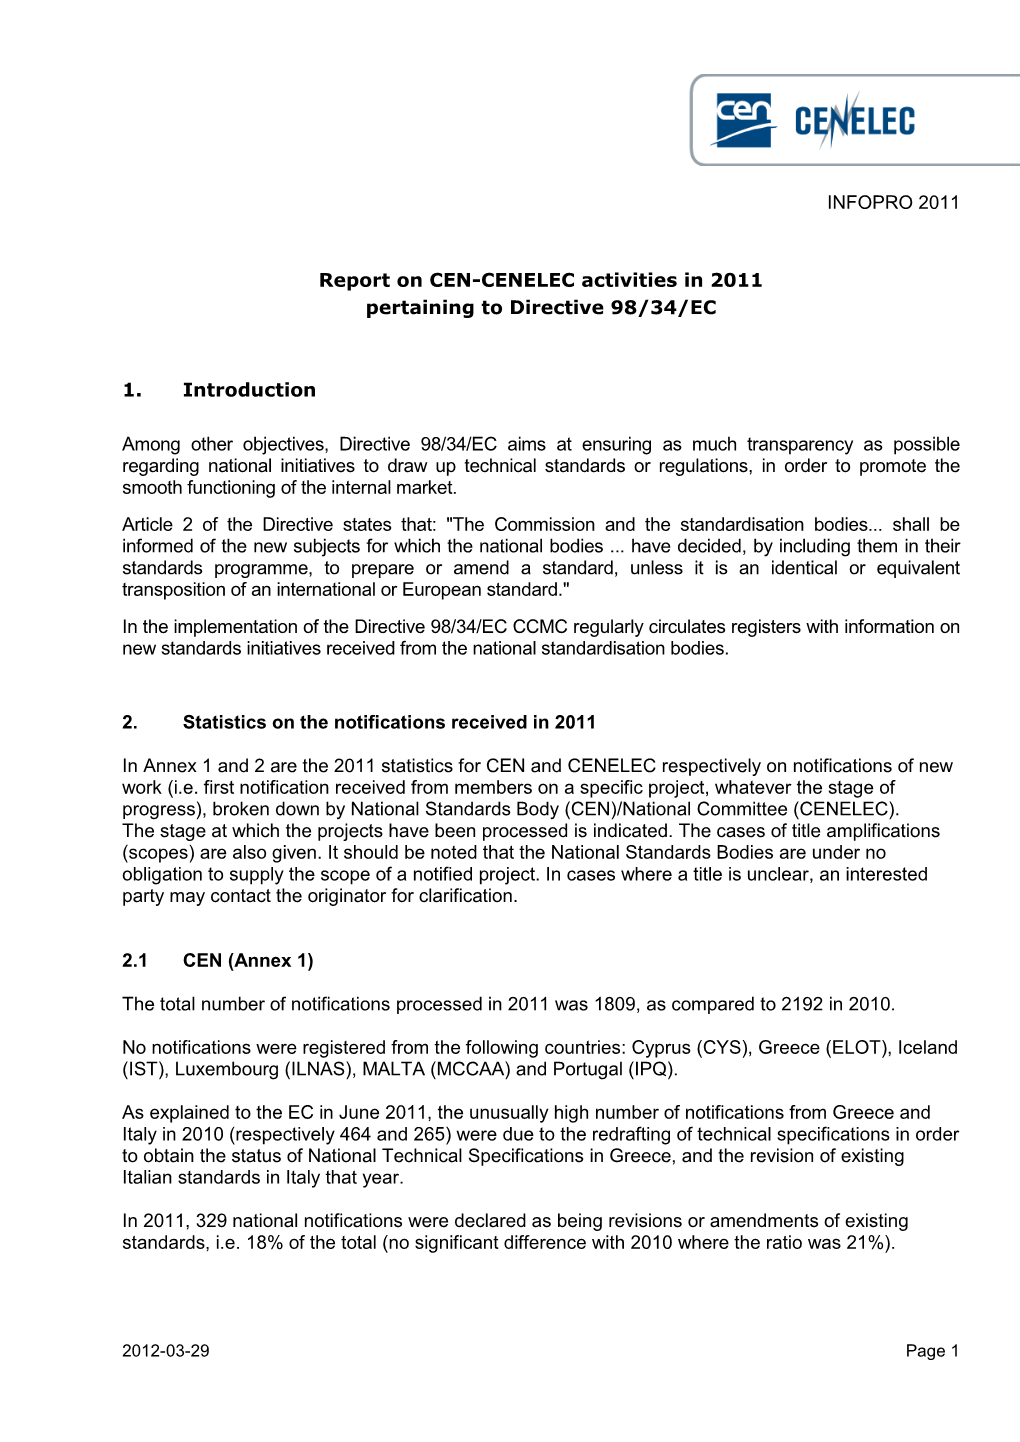 INFOPRO 2011 Report on CEN-CENELEC Activities in 2011